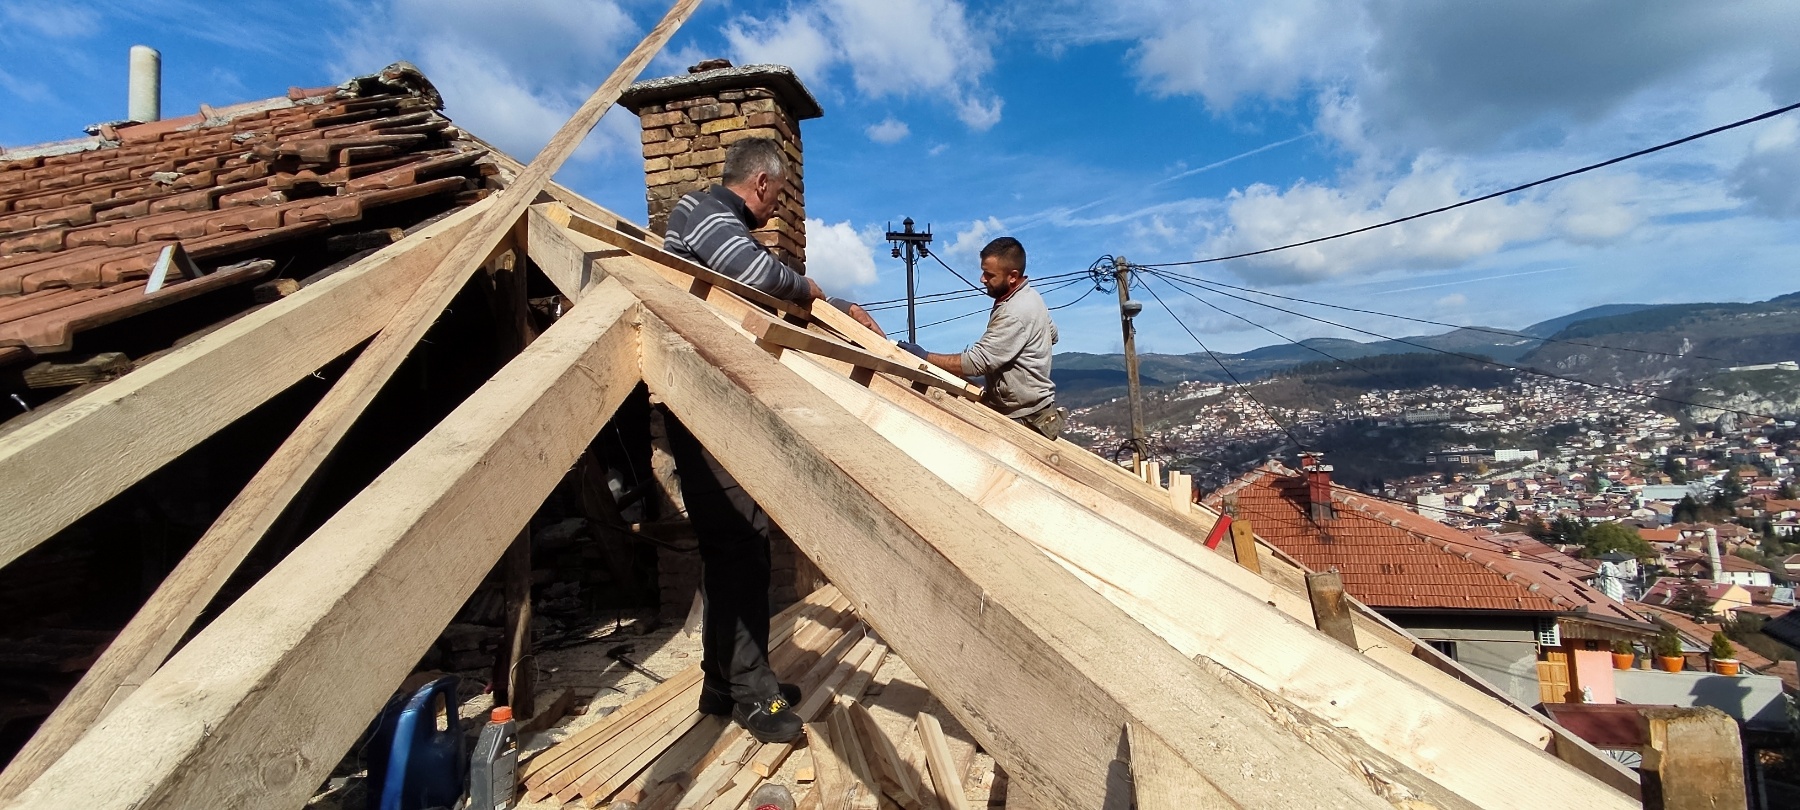 na Širokači je u subotu izgorio krov kuće radnici popravljaju krov stavljaju nove grede u daljini se vidi grad kuće u mahalama plavo nebo dimnjak